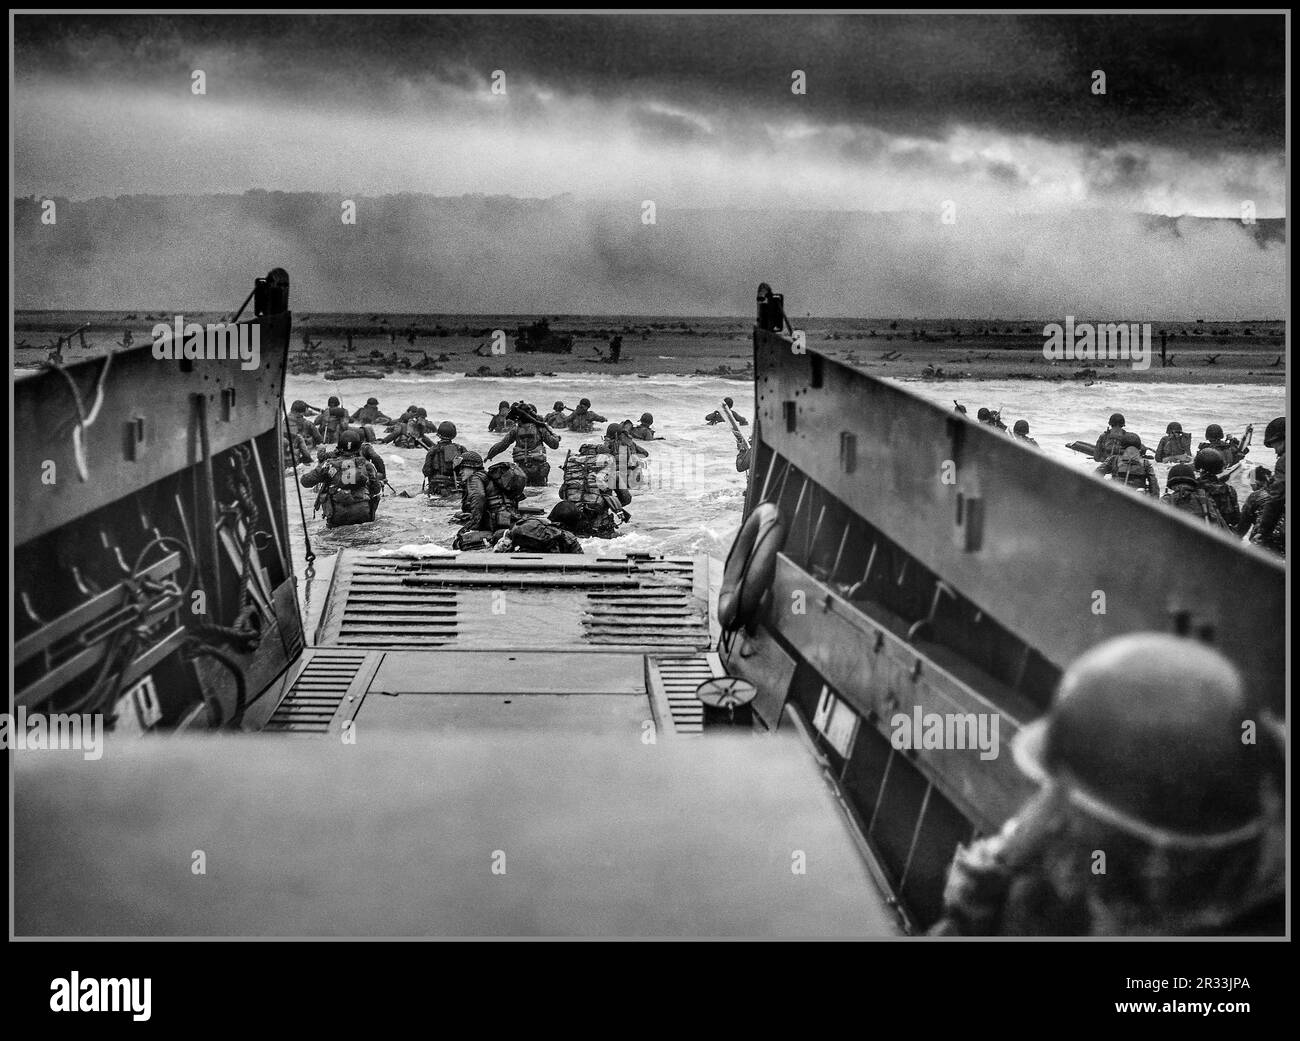 D-DAY UTAH BEACH WW2 Normandy sbarchi le operazioni di sbarco di imbarcazioni da sbarco il 6 giugno 1944 (denominato D-Day) dell'invasione alleata della Germania nazista occupò la Normandia Francia Un LCVP (Landing Craft, Vehicle, Personnel) della USS Samuel Chase, con equipaggio della Guardia Costiera degli Stati Uniti, sbarca le truppe della compagnia A, 16th Infantry, 1st Infantry Division si dirige verso la sezione Fox Green di Omaha Beach (Calvados, basse-Normandie, Francia) la mattina del 6 giugno 1944. I soldati americani incontrarono la 352nd Division tedesca appena formata quando atterrarono. Foto Stock